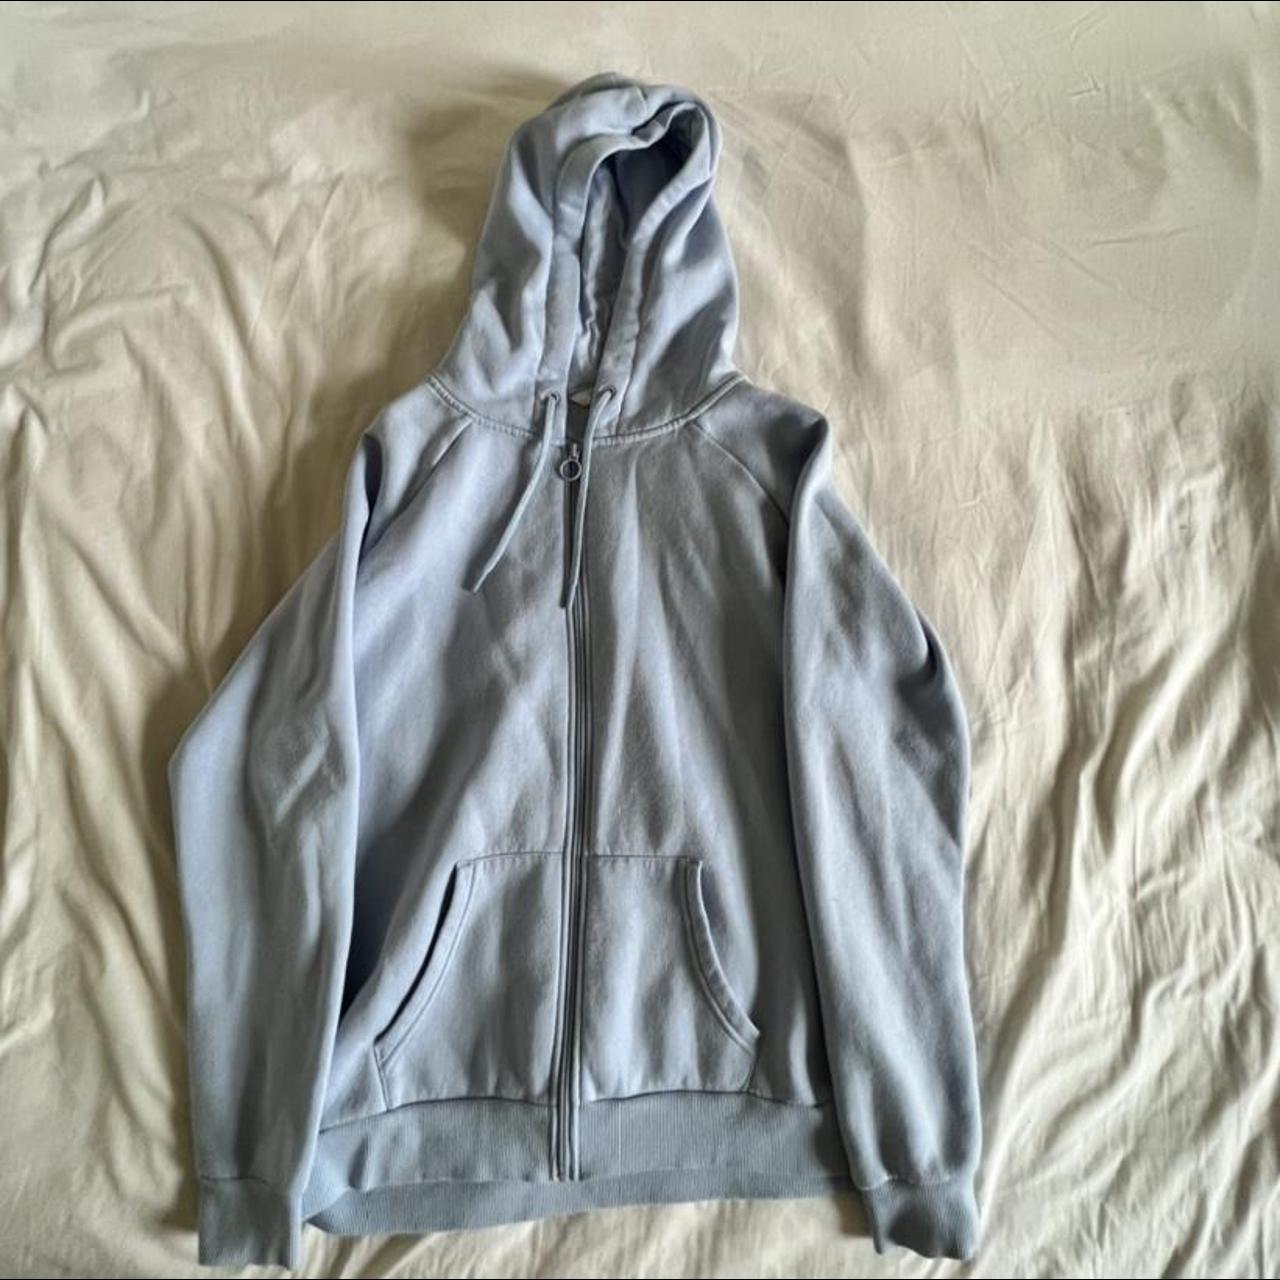 Primark pale blue zip up hoodie oversized in... - Depop